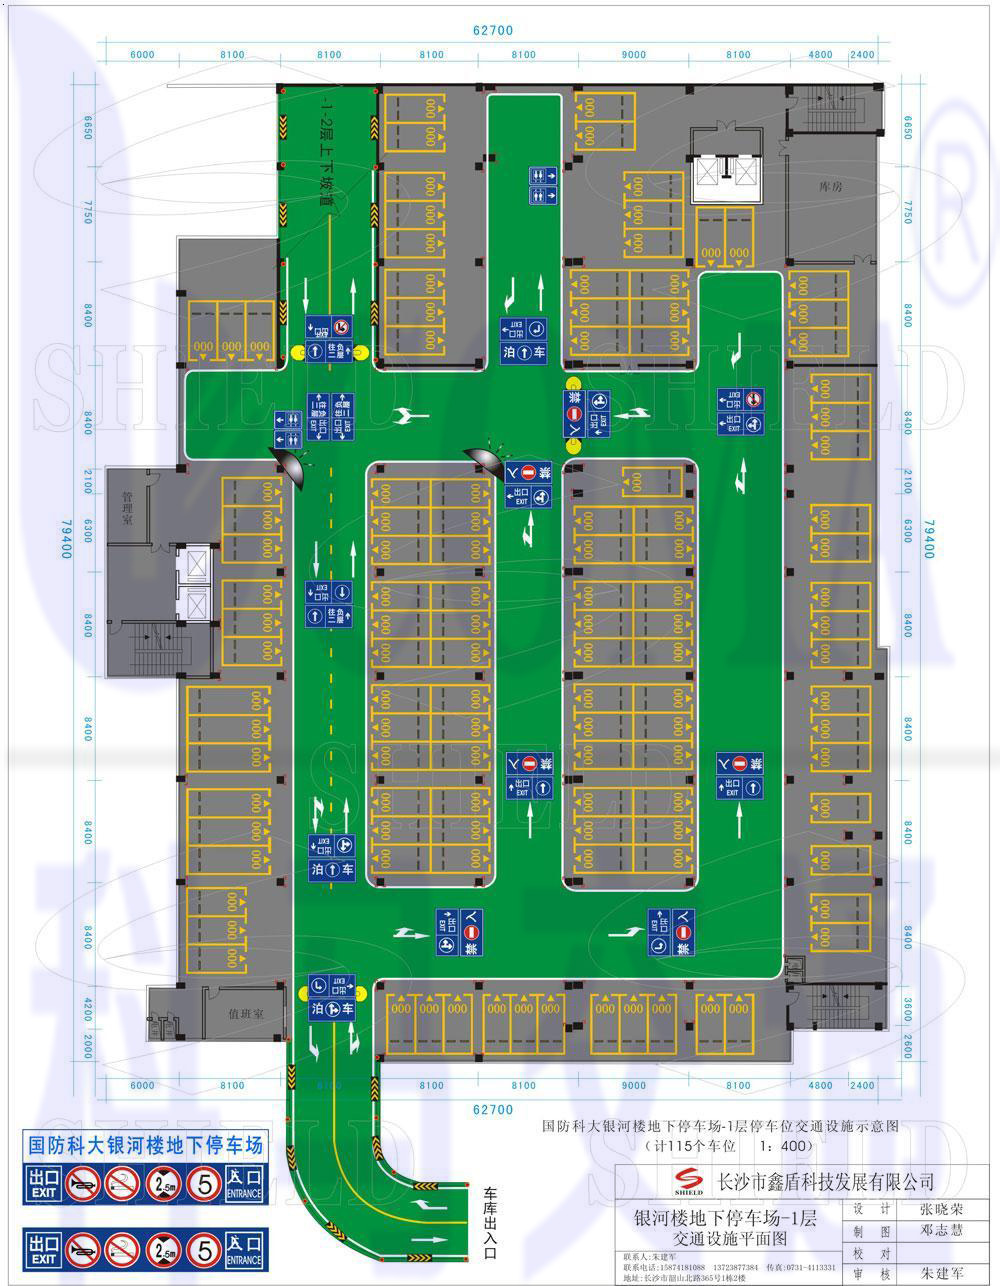 地下停车场全景设计图.jpg